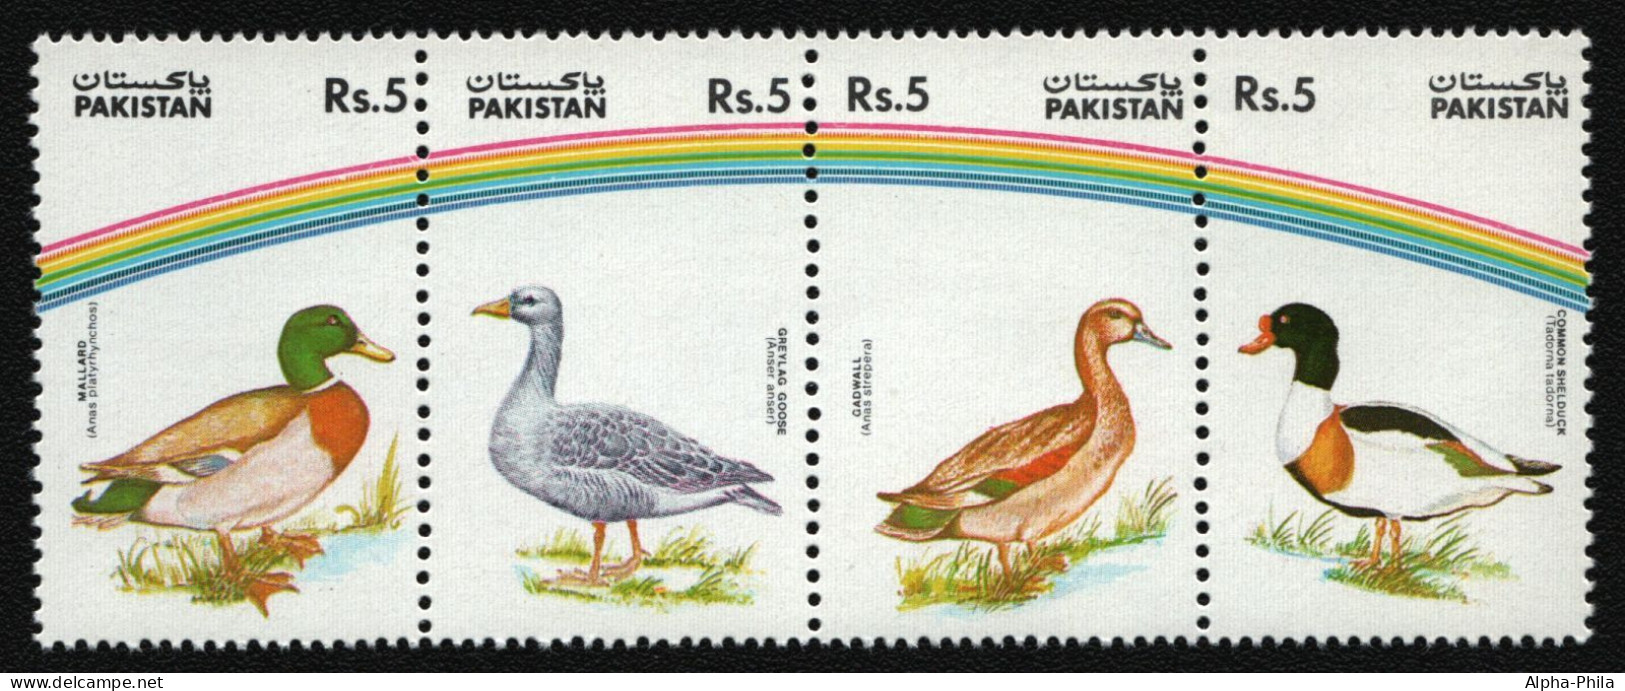 Pakistan 1992 - Mi-Nr. 863-866 ** - MNH - Vögel / Birds (I) - Pakistan